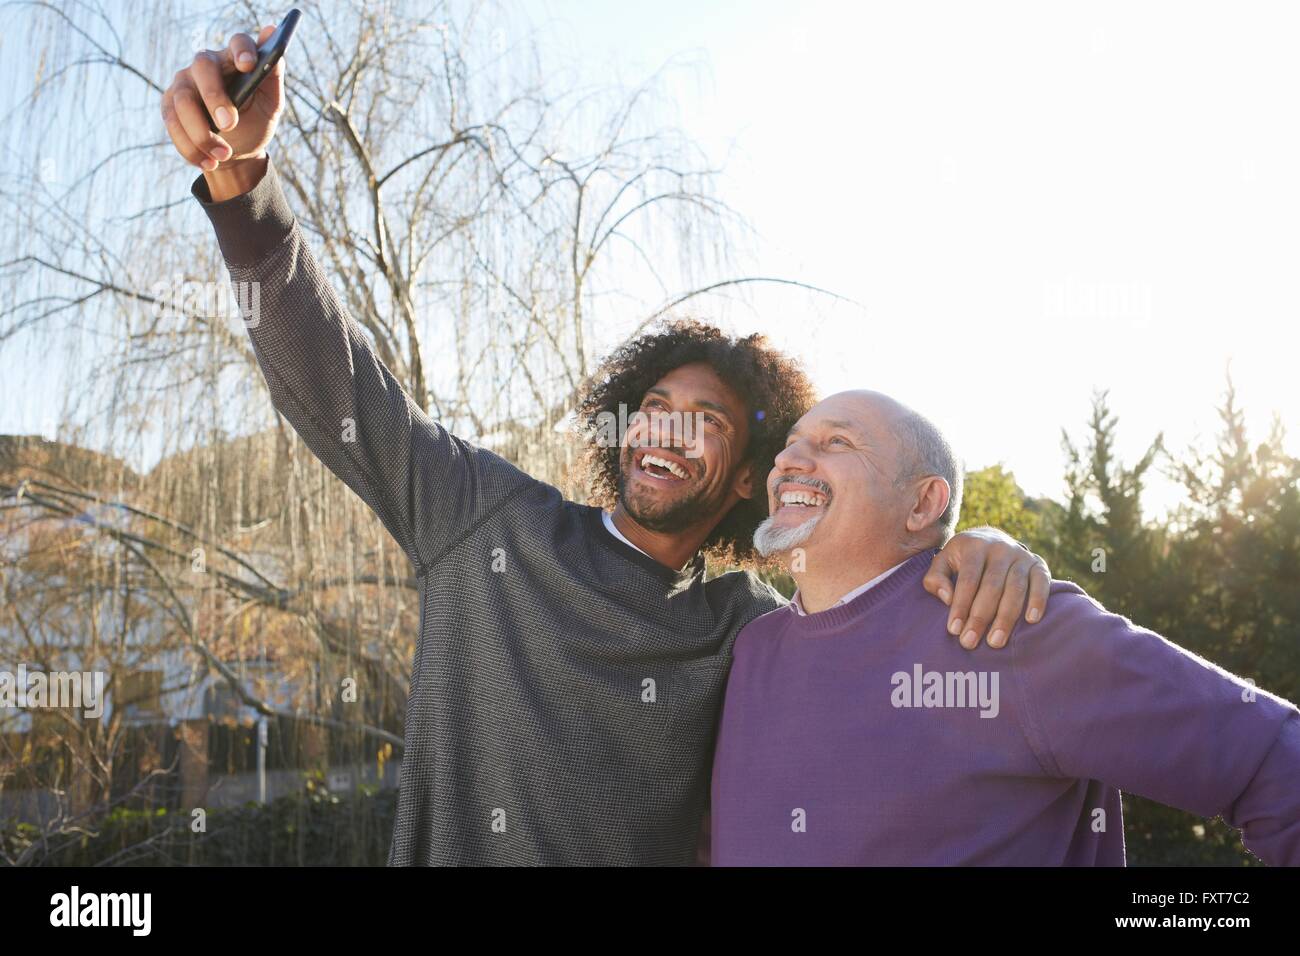 Les hommes en armes autour de l'autre via le smartphone pour prendre smiling selfies Banque D'Images